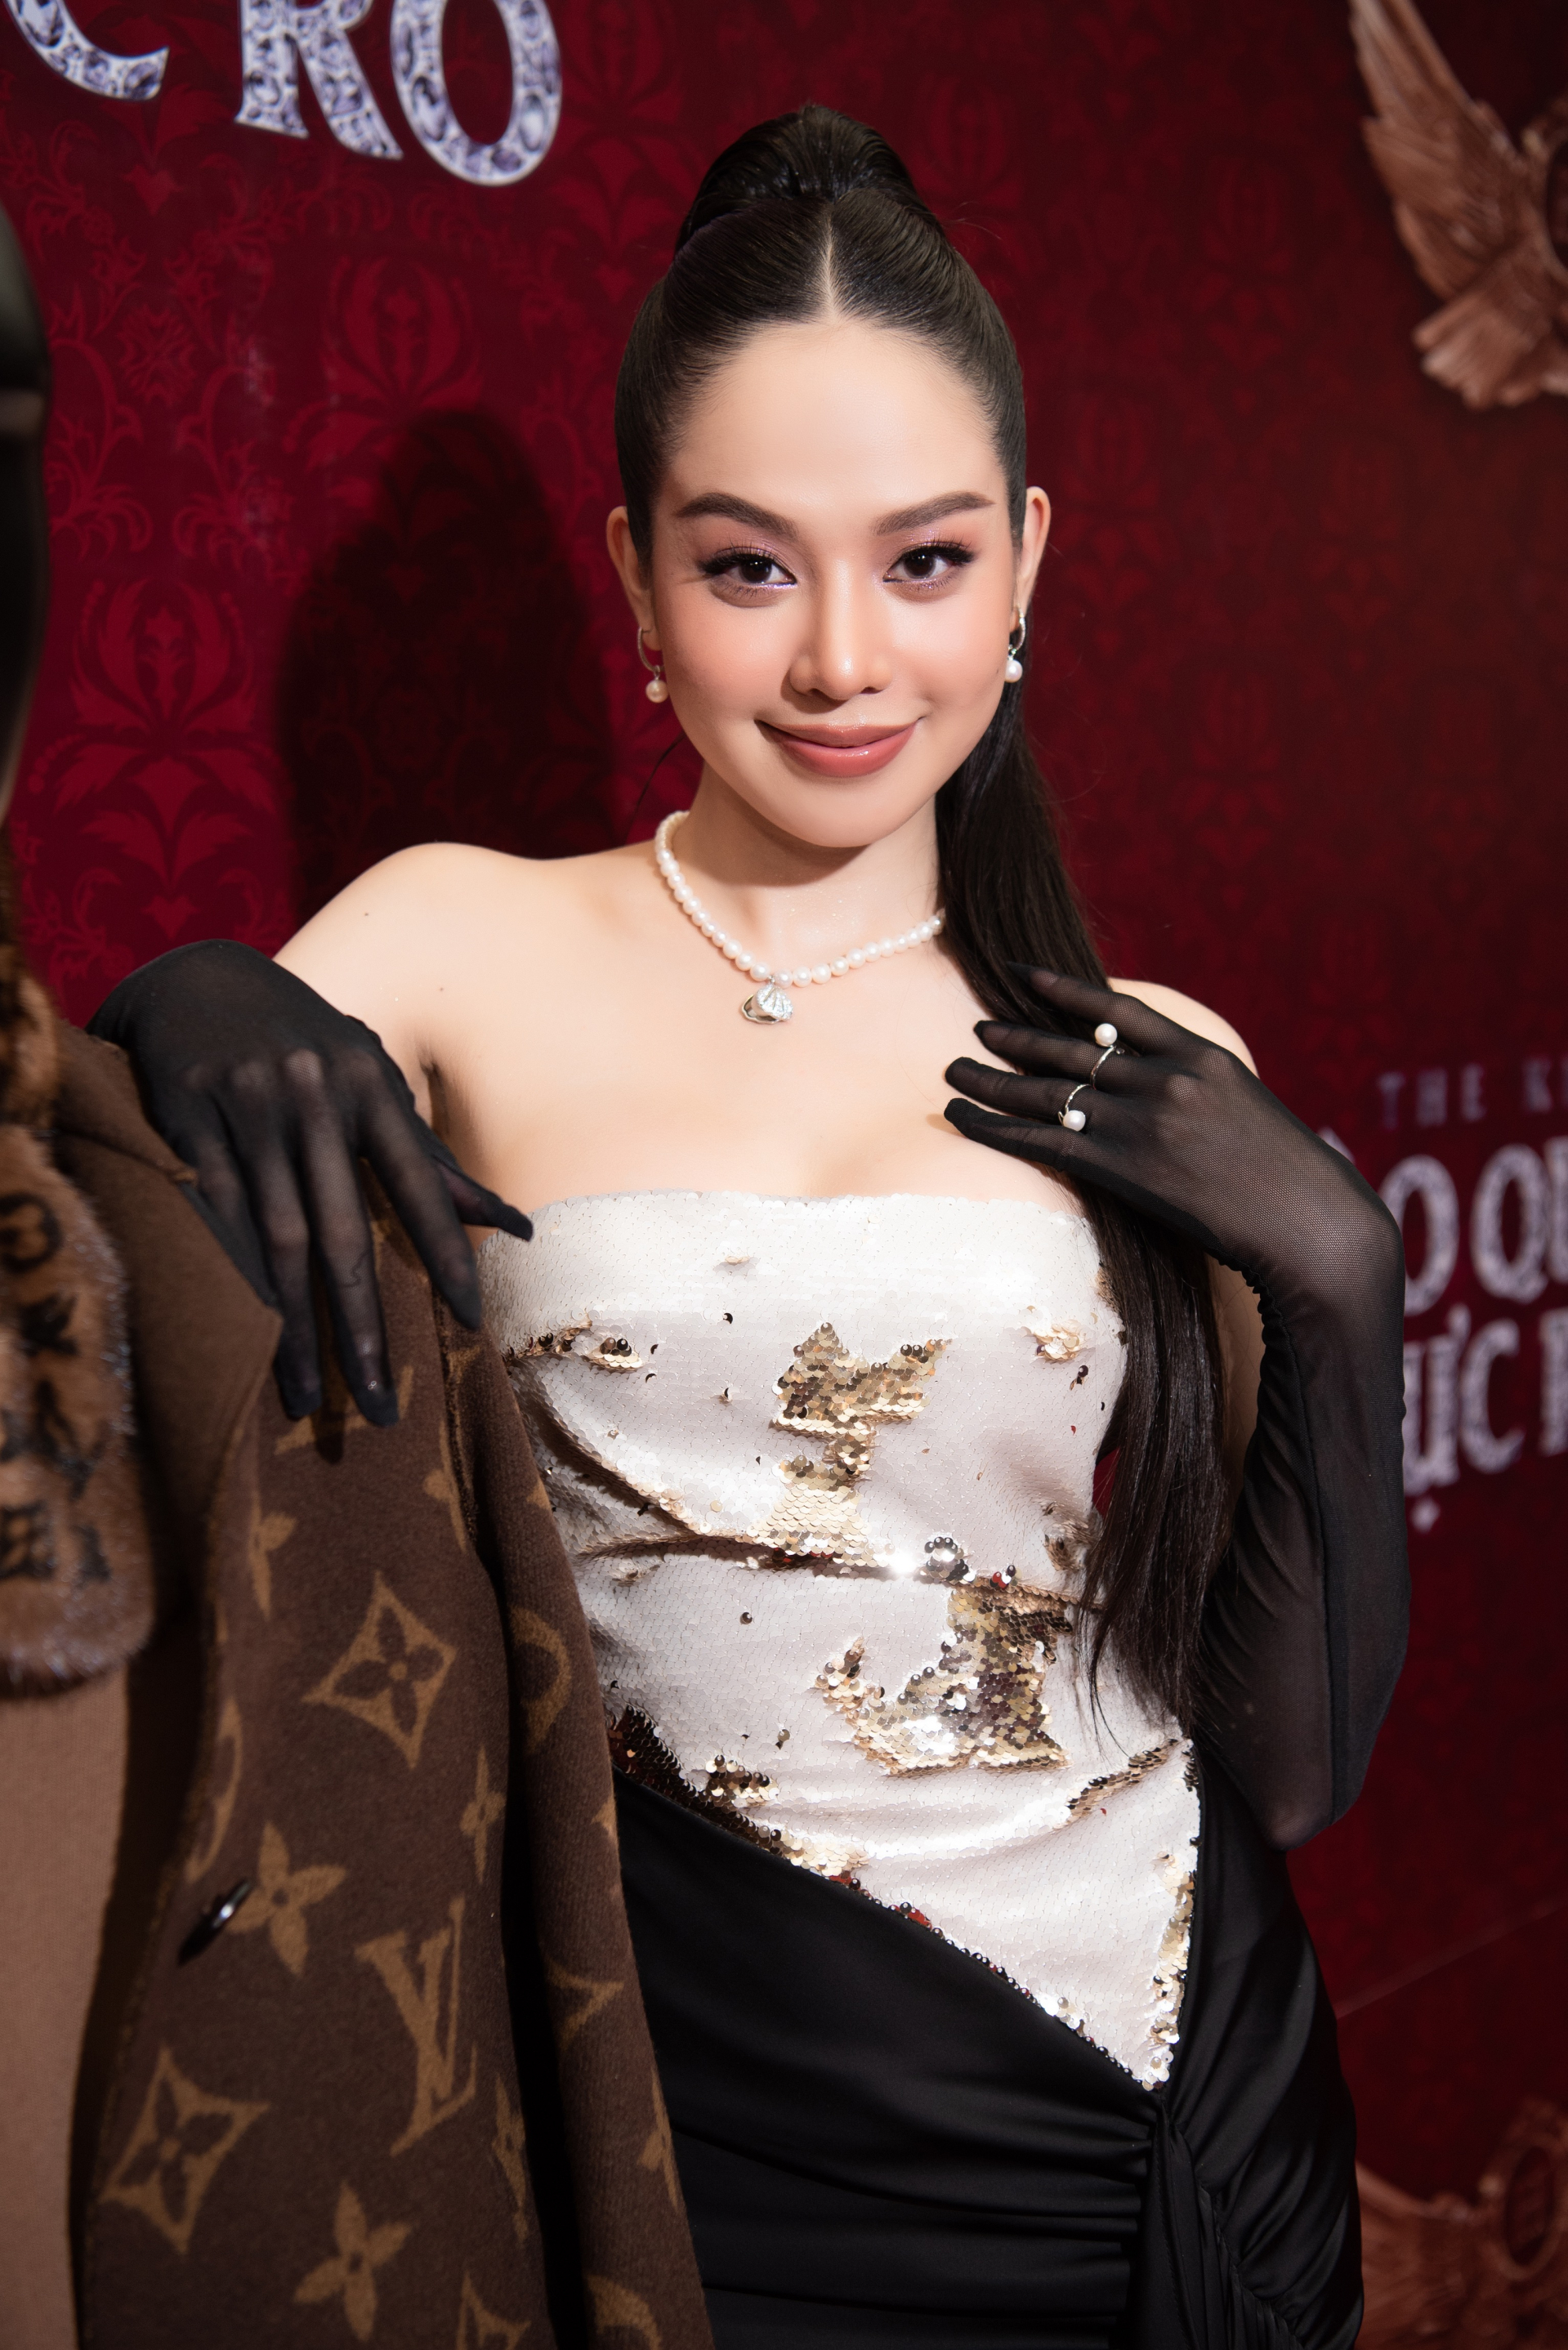 Hoa hậu Thanh Thuỷ diện trang phục cắt xẻ cực táo bạo tại sự kiện của Đàm Vĩnh Hưng - ảnh 2